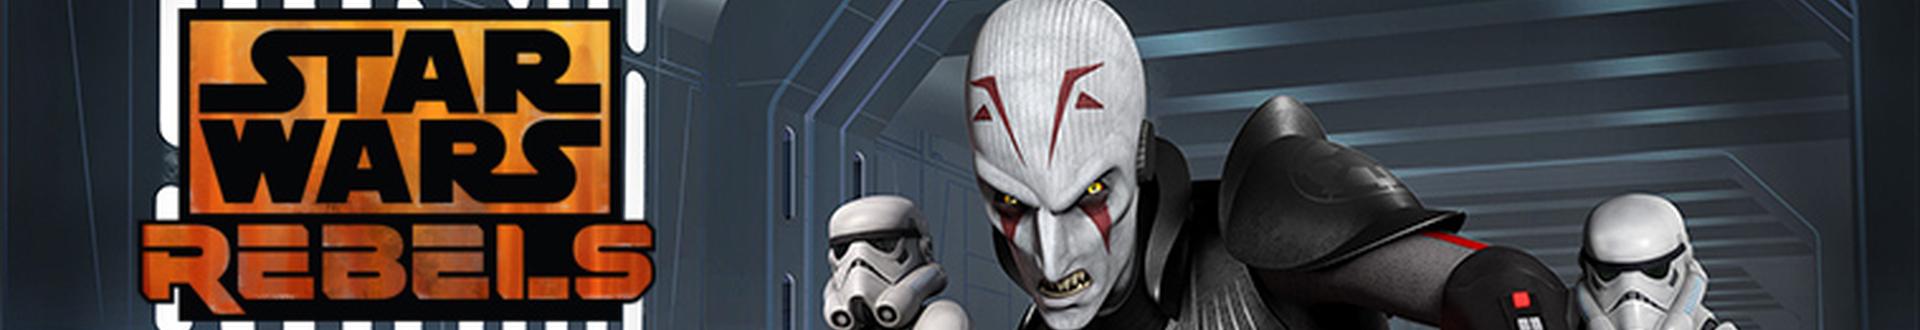 Image illustrative de Star Wars Rebels